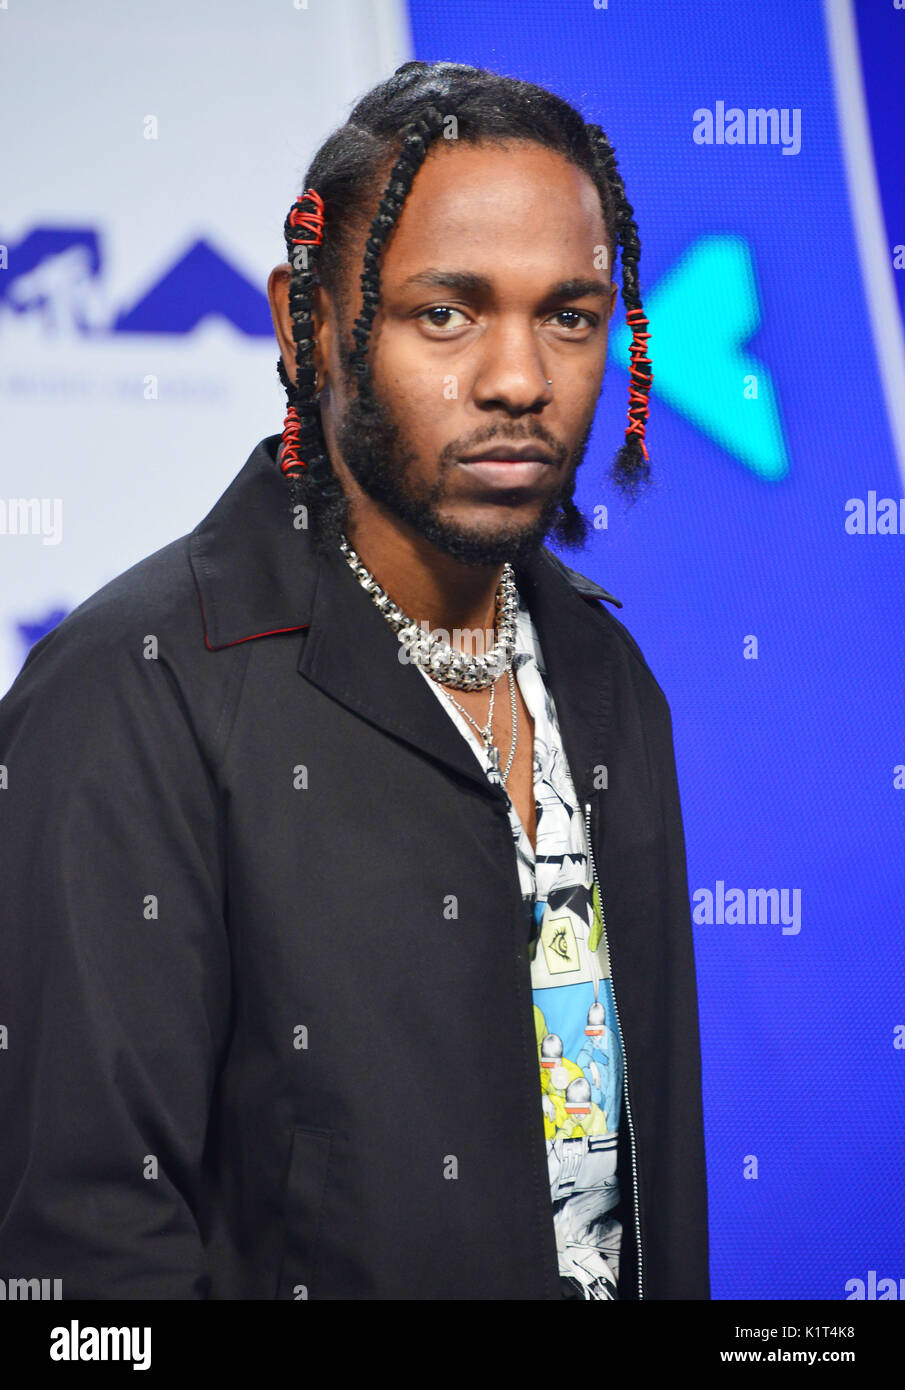 Kendrick lamar 153 arrivando a MTV VMA 2017 ( Music Awards ) presso il  Great Western Forum di Los Angeles. Agosto 27, 2017 Foto stock - Alamy